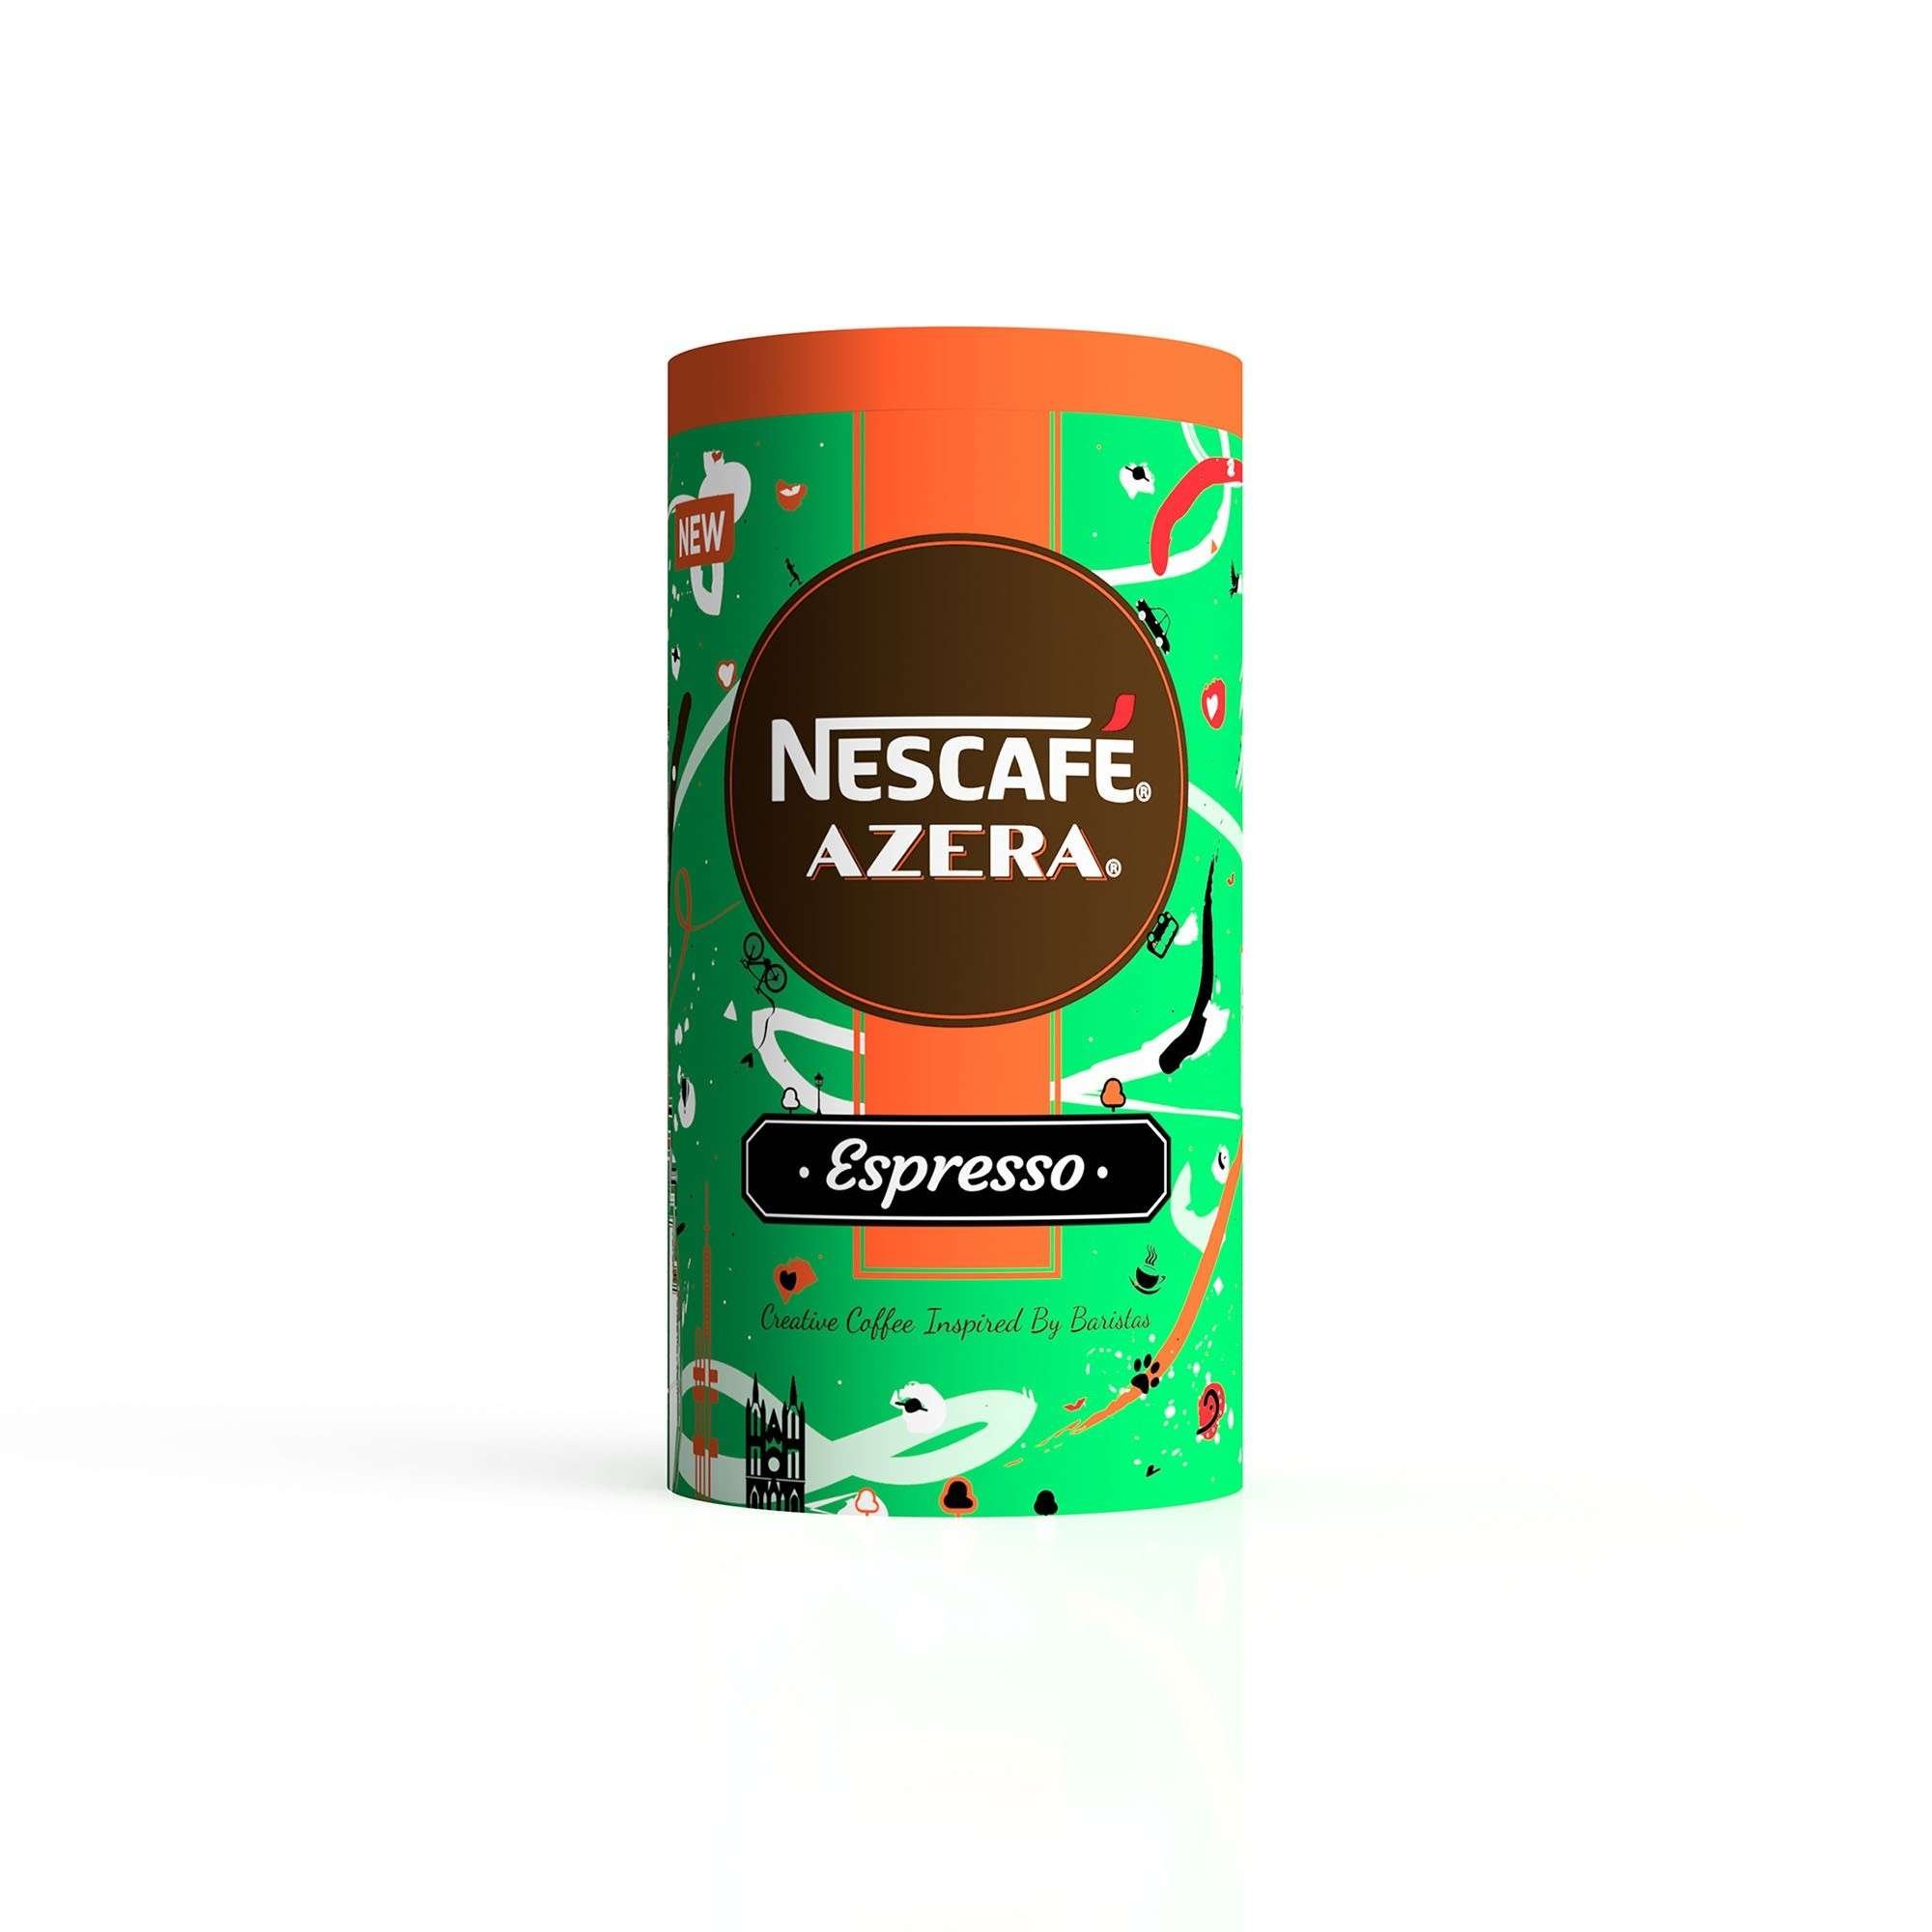 Nescafé etiqueta Azera inspirado en la vida de la ciudad